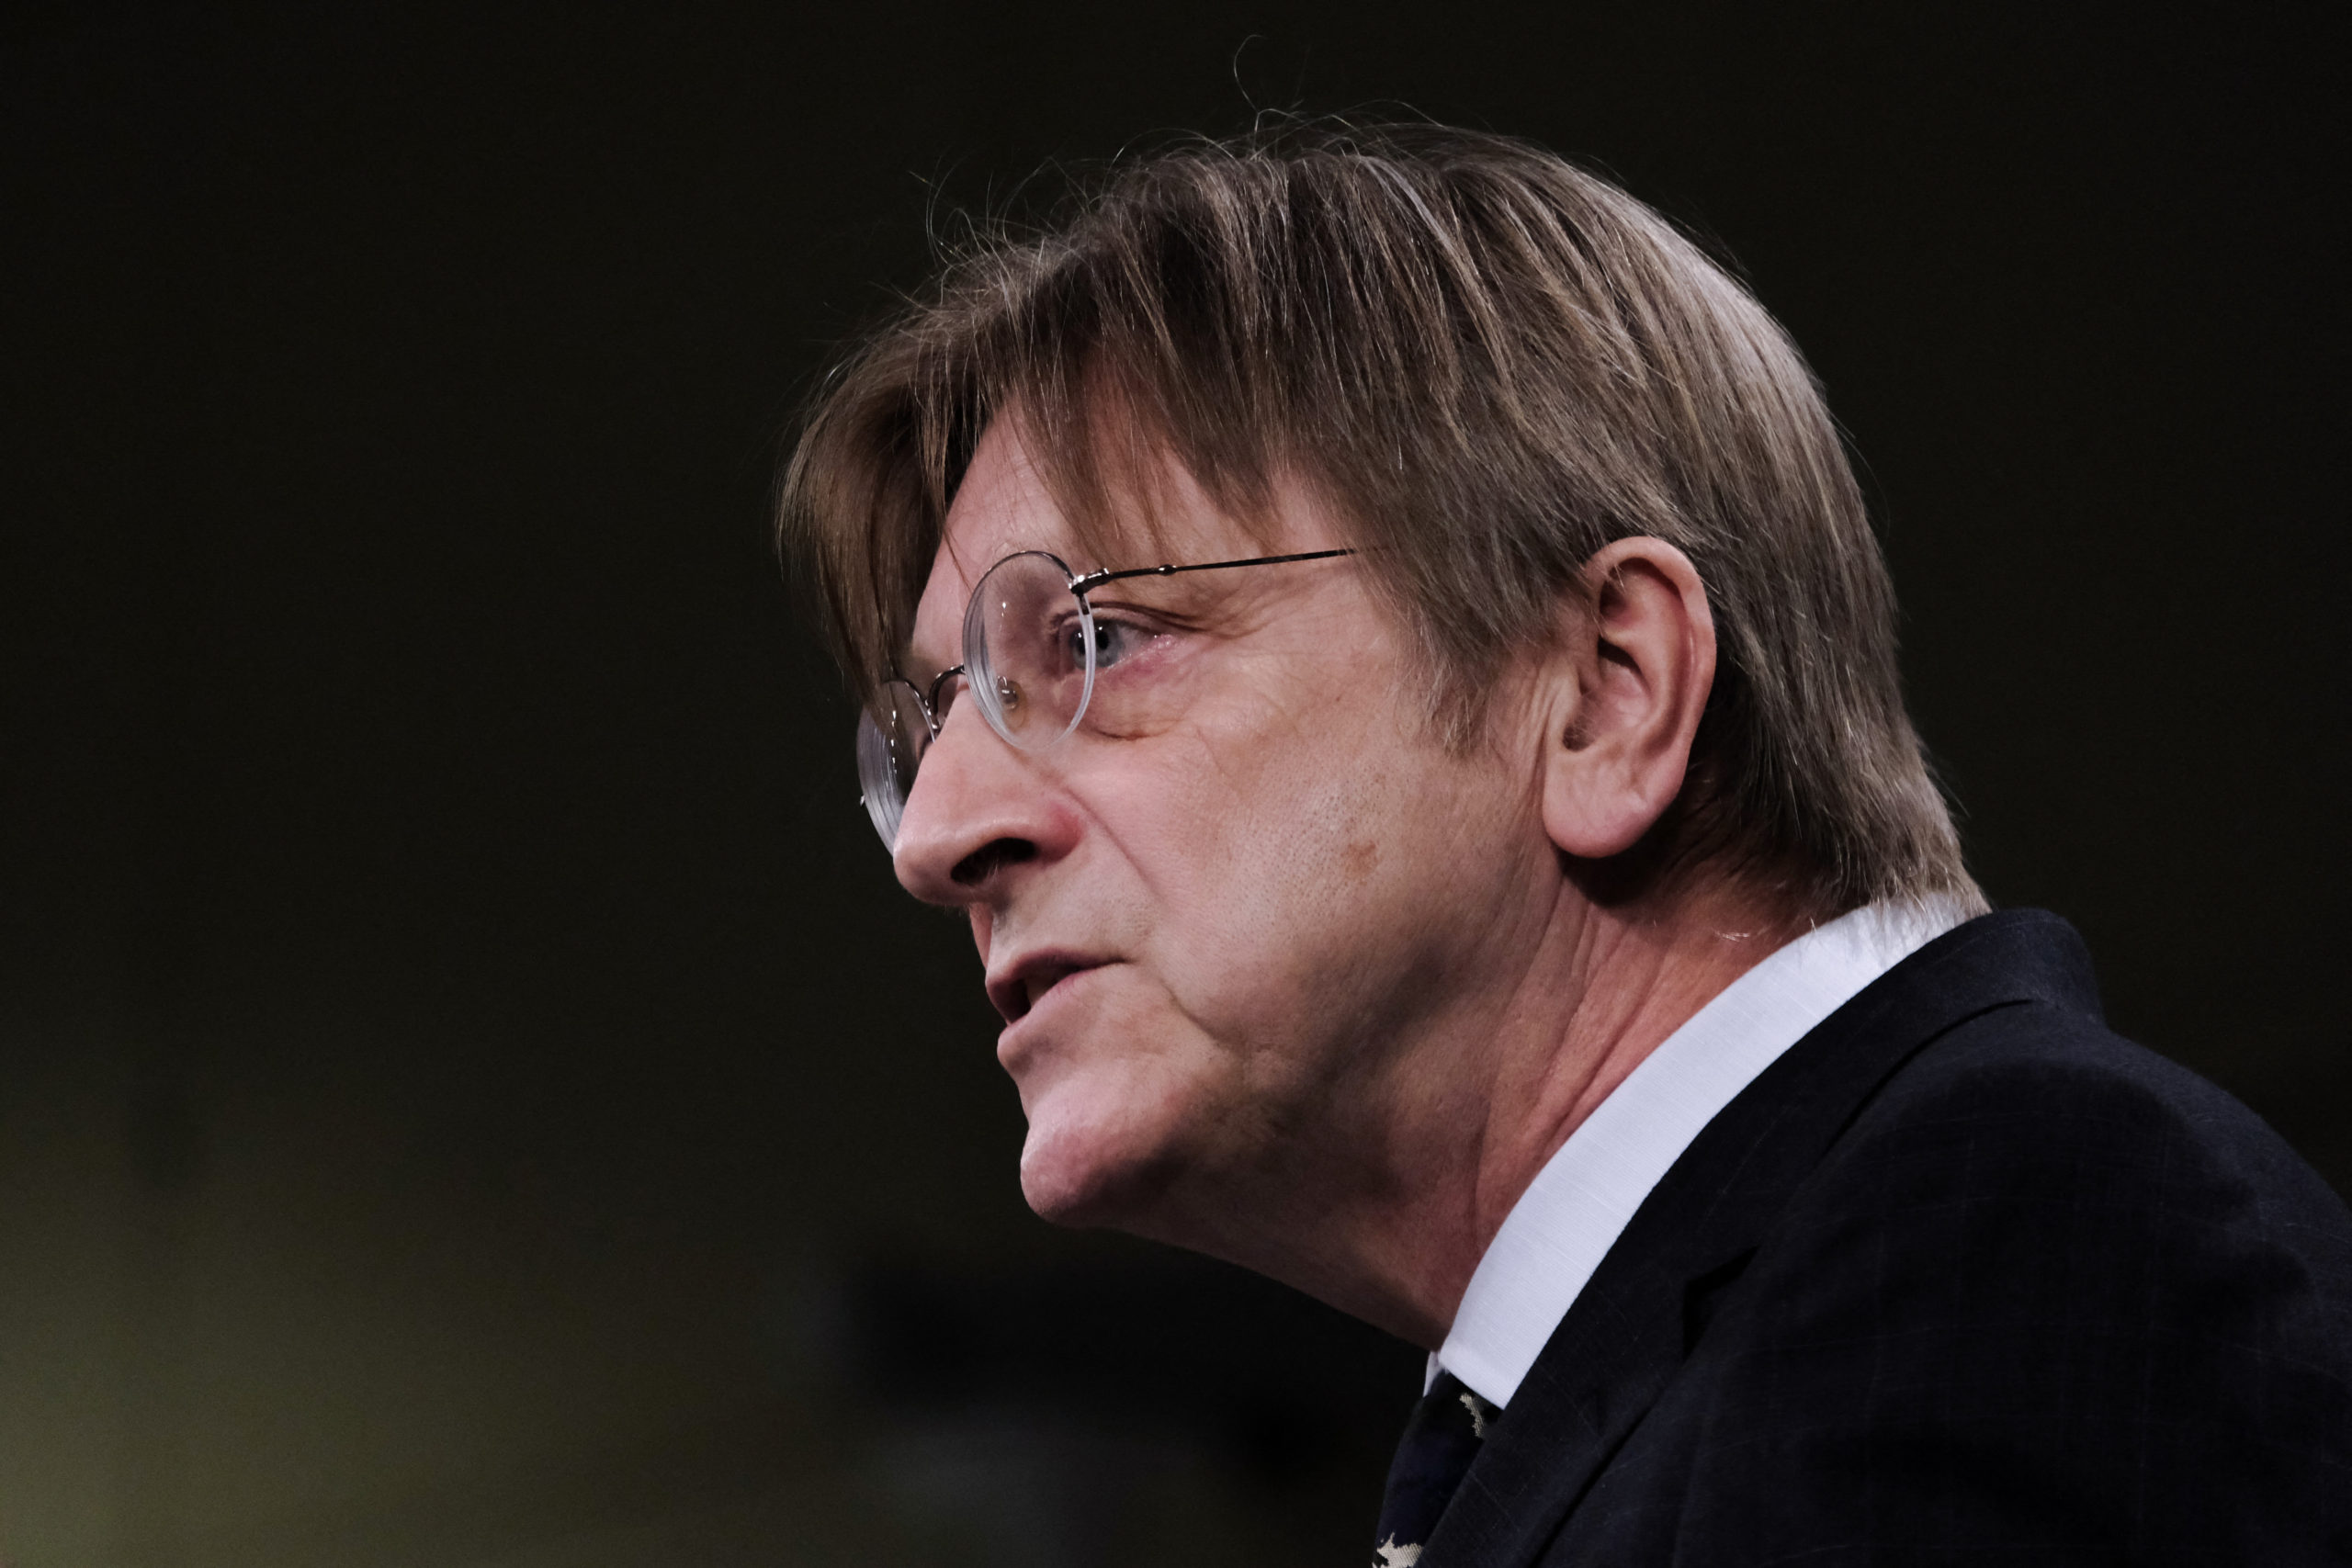 Verhofstadt karácsonyi posztjából nem maradt ki az aktuálpolitika